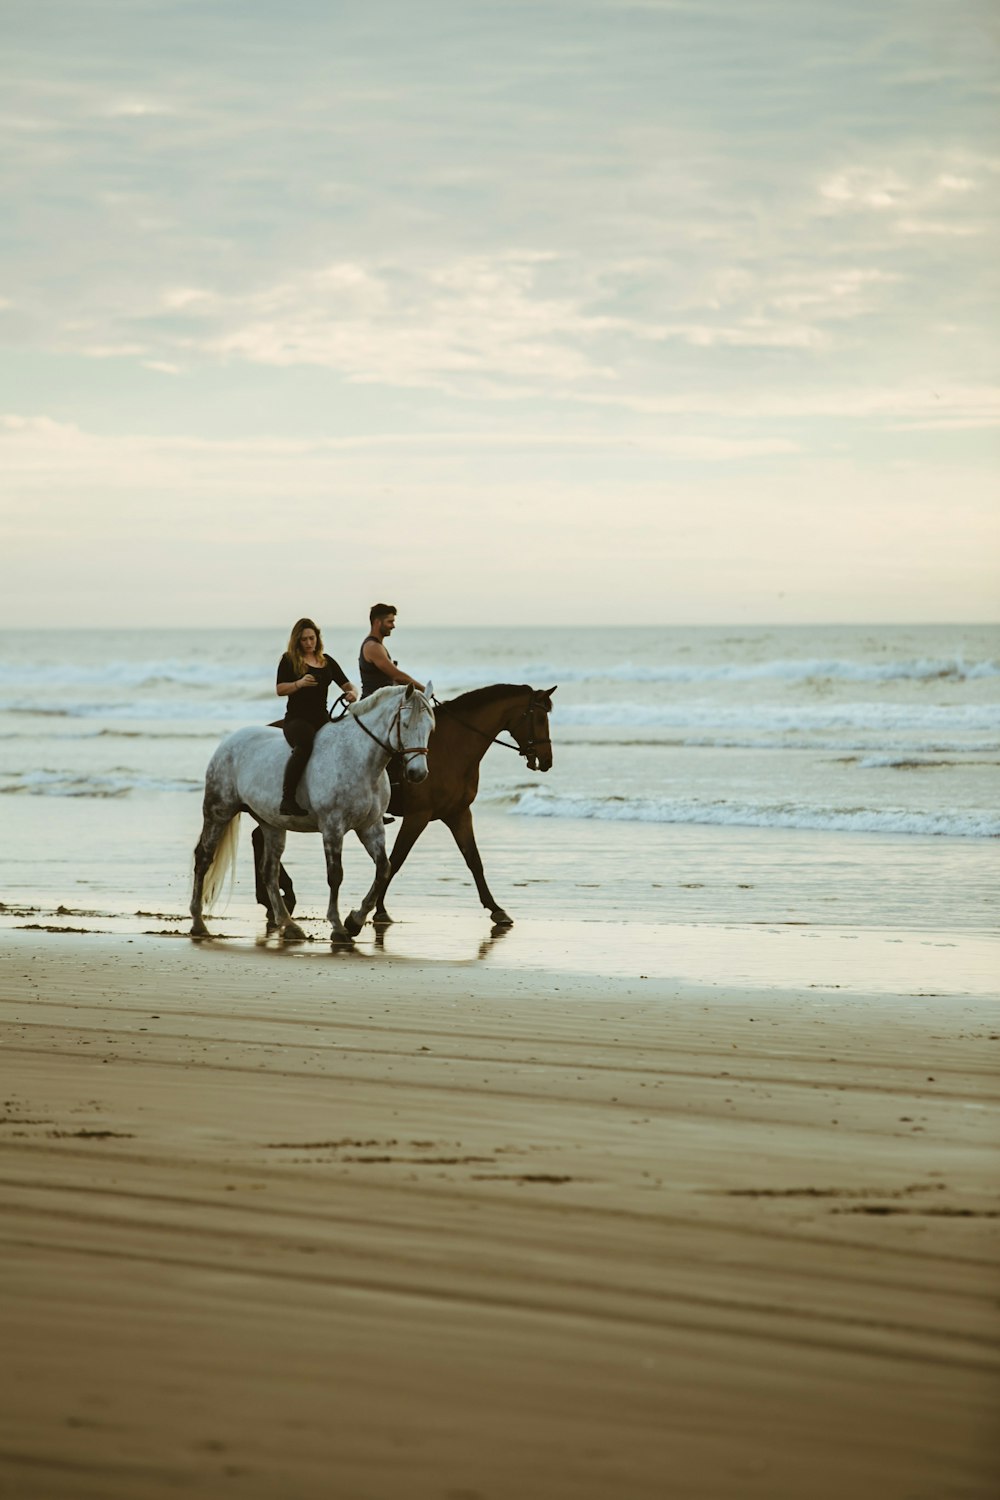 바닷가 근처에서 말을 타고 있는 남녀